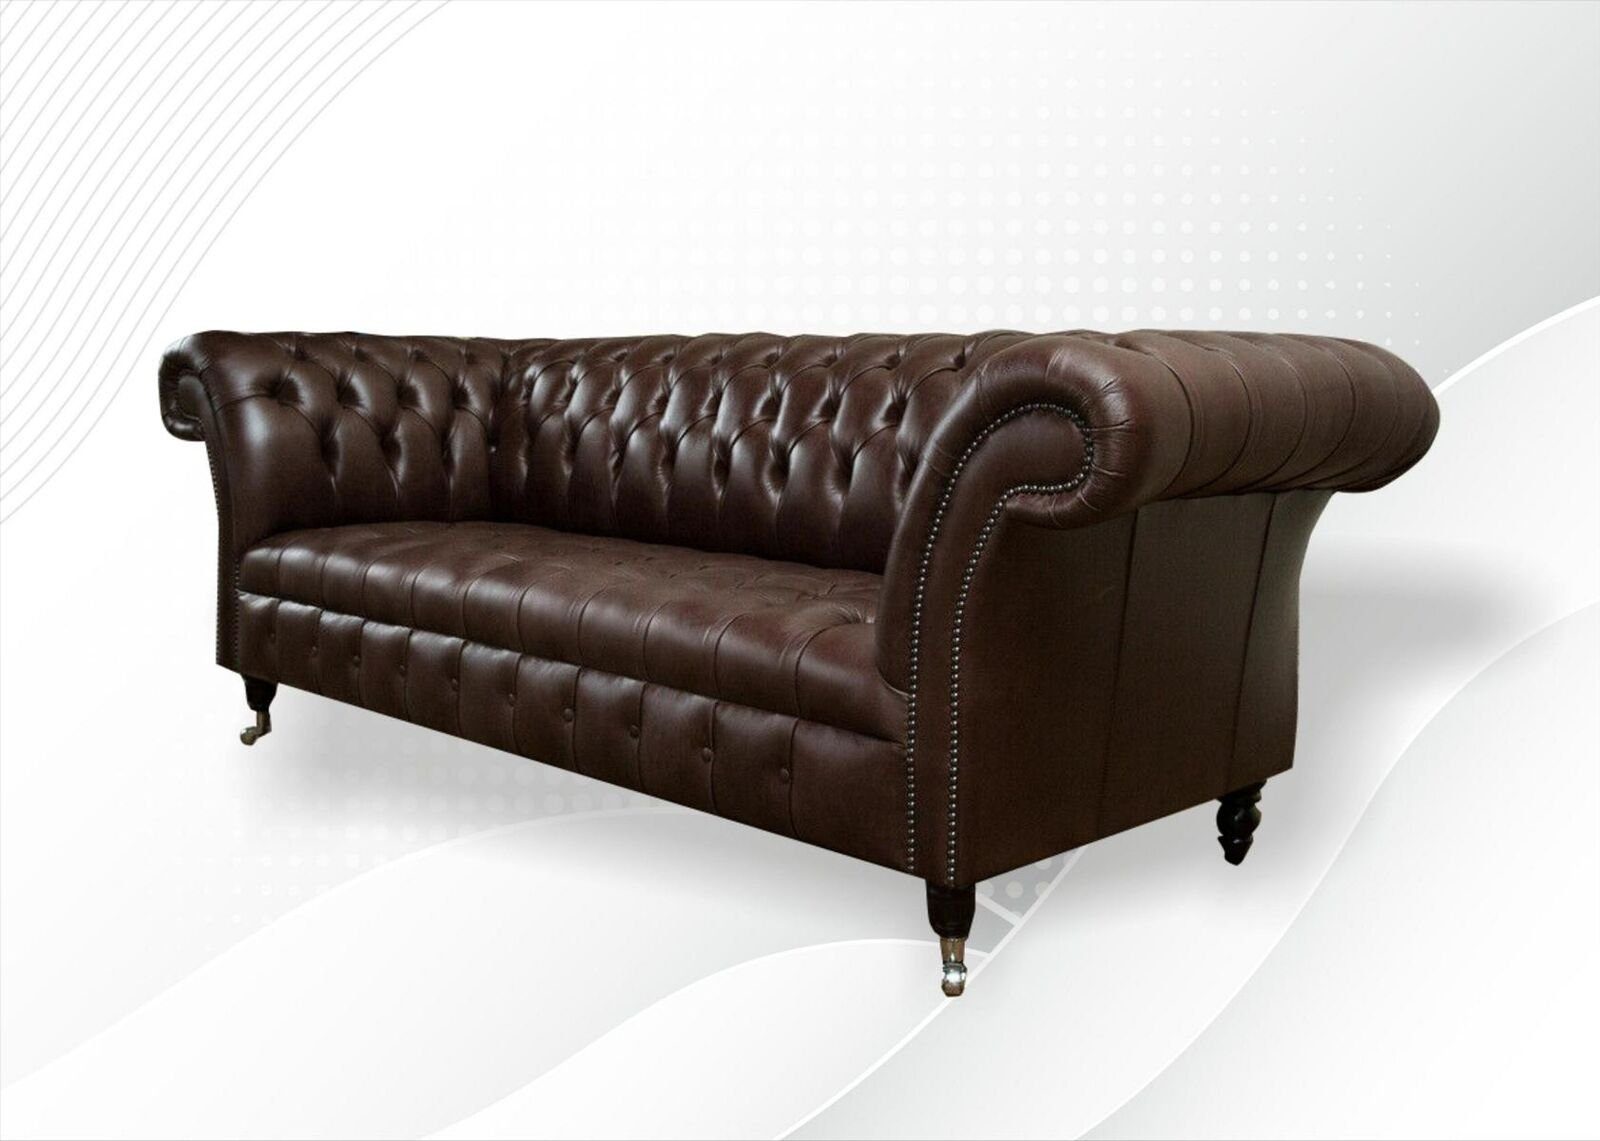 JVmoebel 3-Sitzer Chesterfield 3 Sitzer Möbel Sofort 100% Sofa Luxus Leder Leder